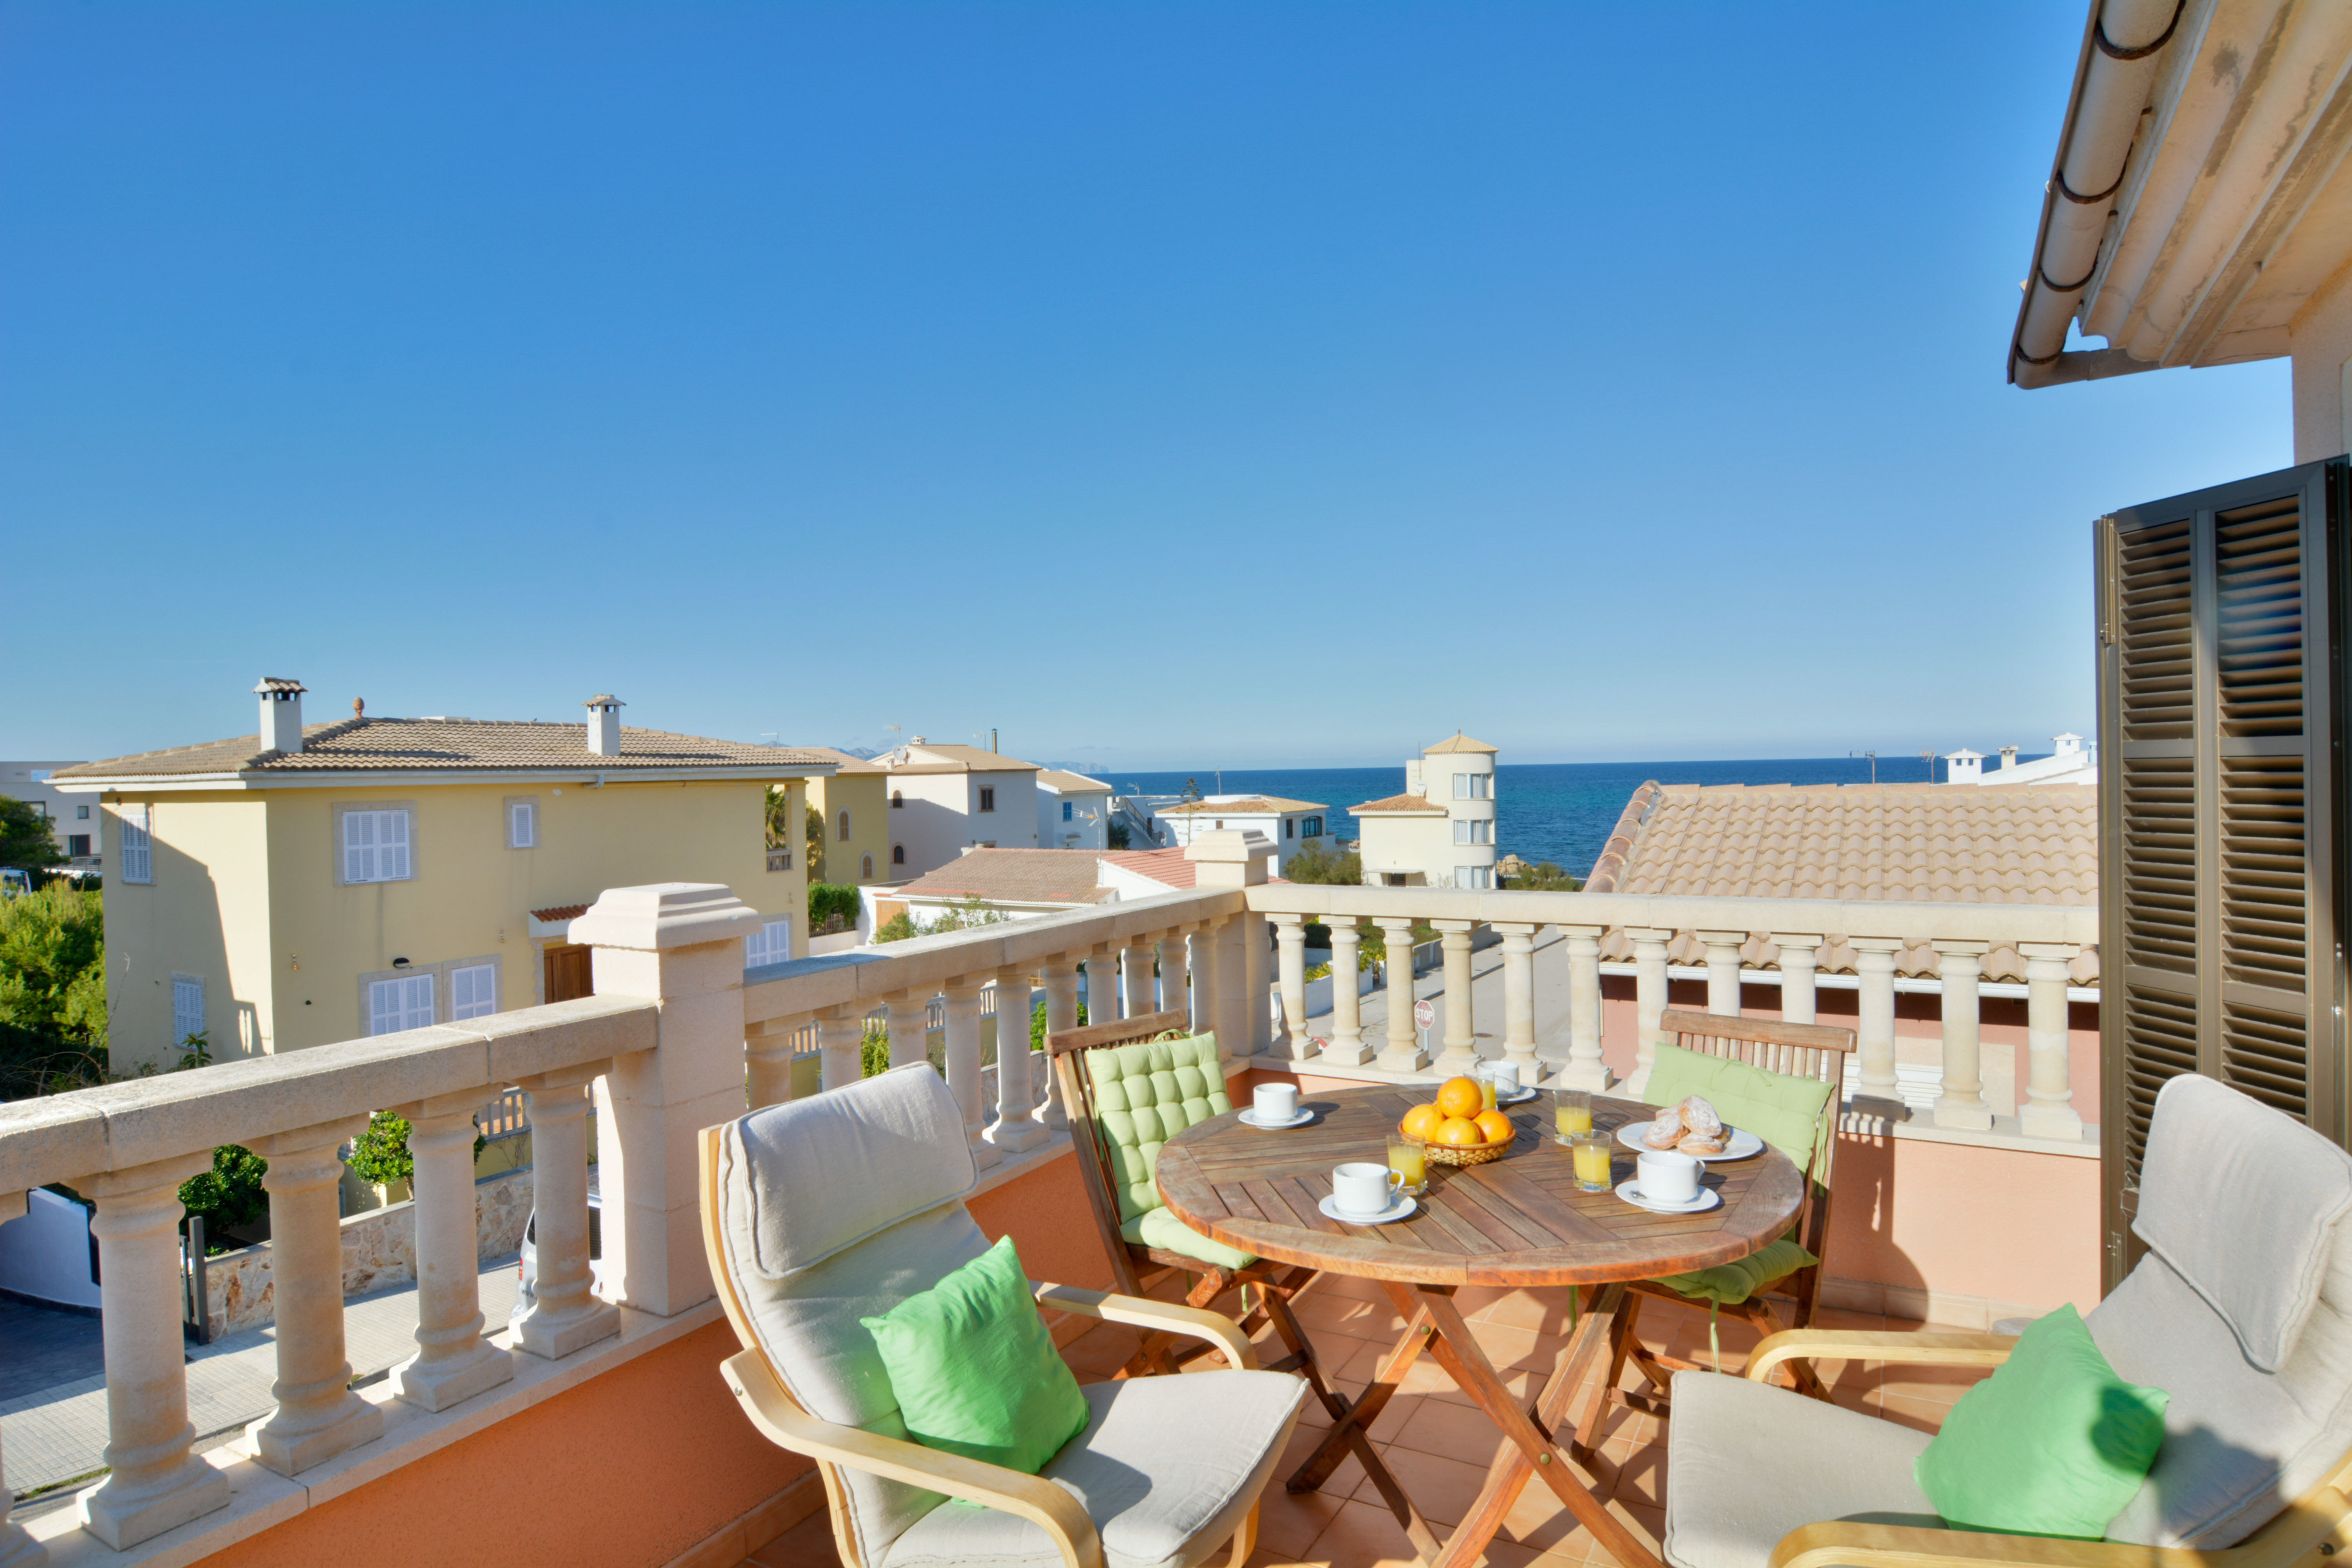 Son Serra beach apartment 350mts beach and terrace Ferienwohnung in Spanien